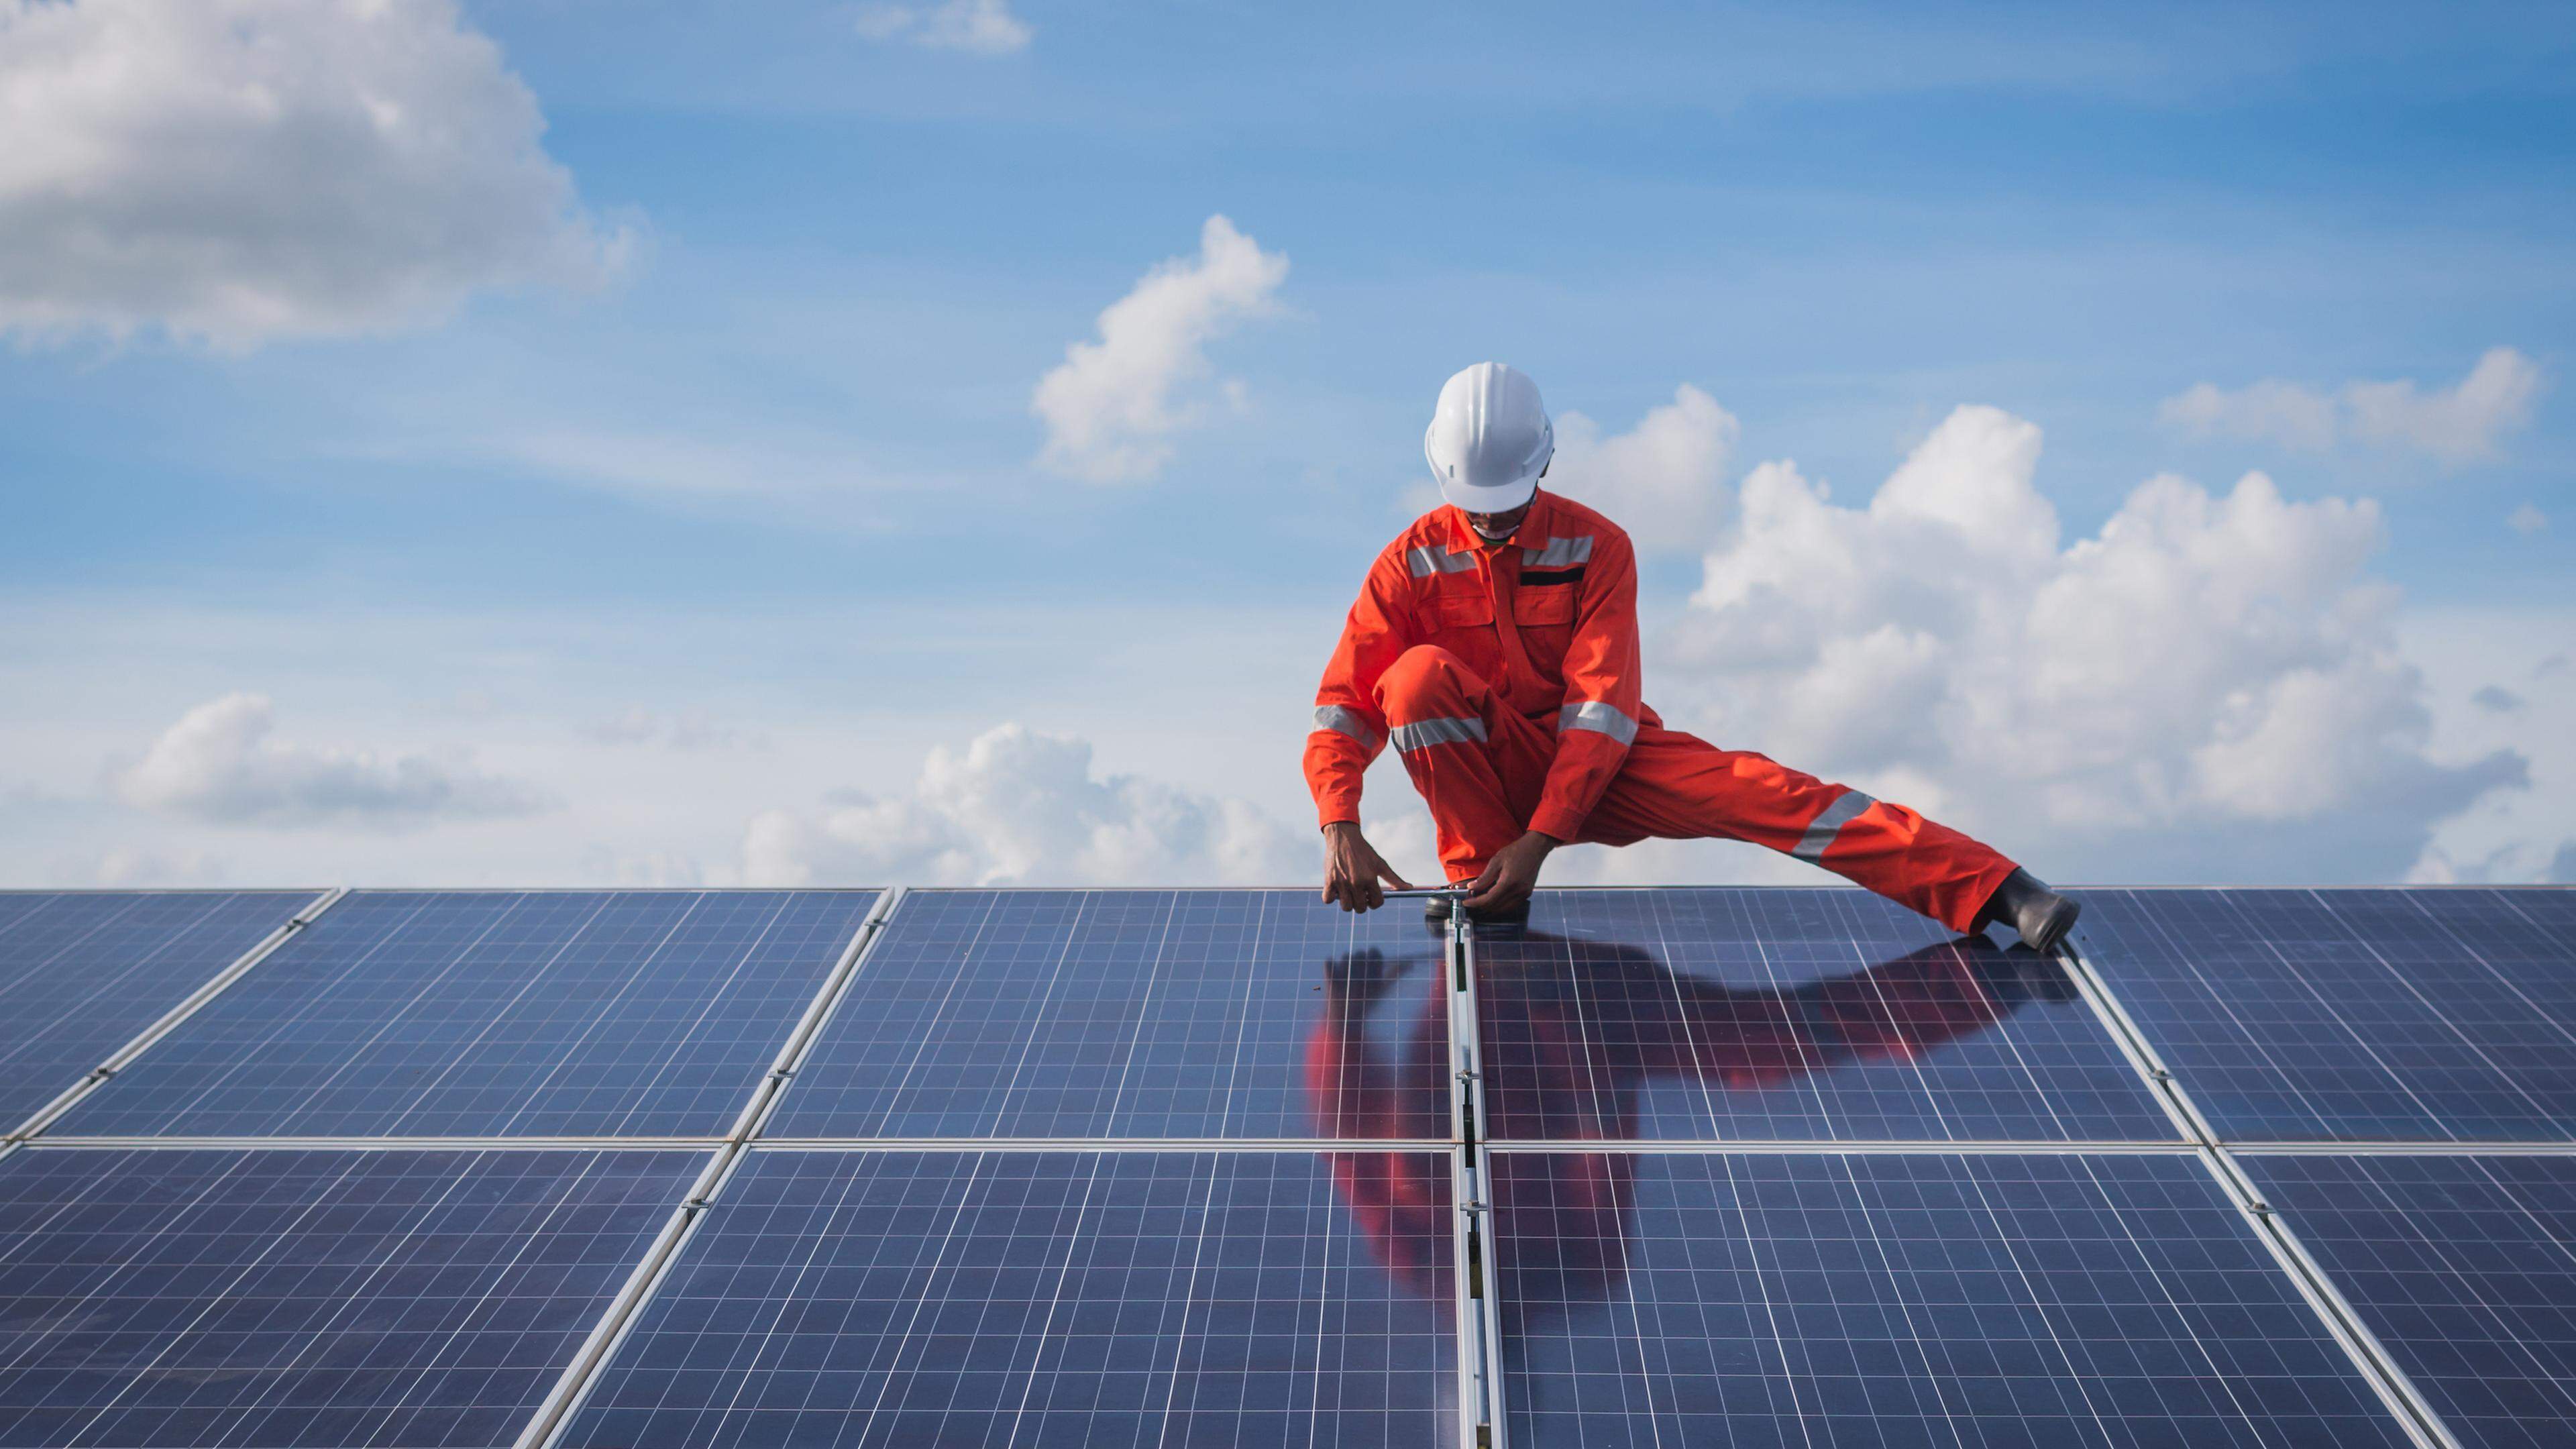 Bis zum 31. März dieses Jahres sind 1.117 Anträge für Photovoltaikanlagen eingegangen.